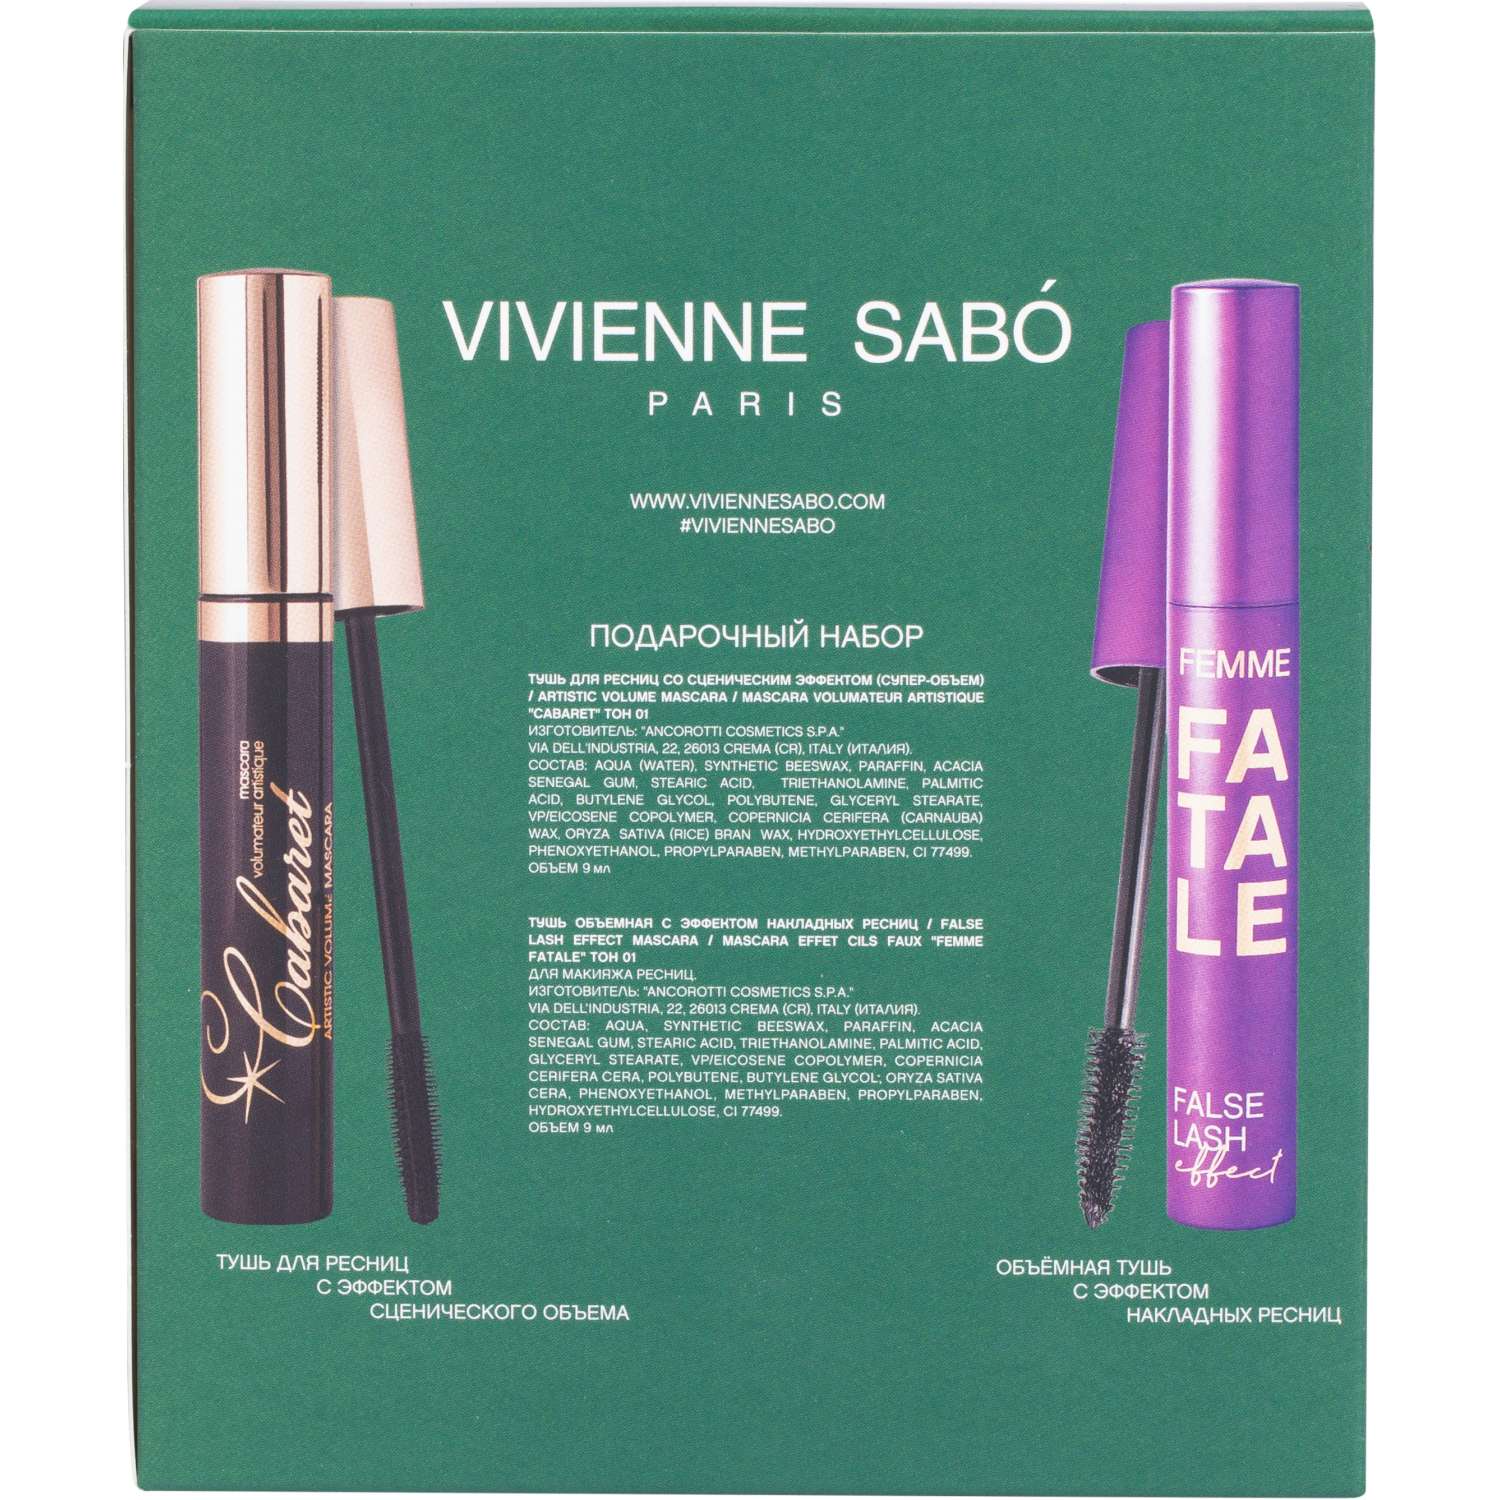 Подарочный набор Vivienne Sabo Тушь Cabaret 01 и Тушь Femme Fatale 01 - фото 2